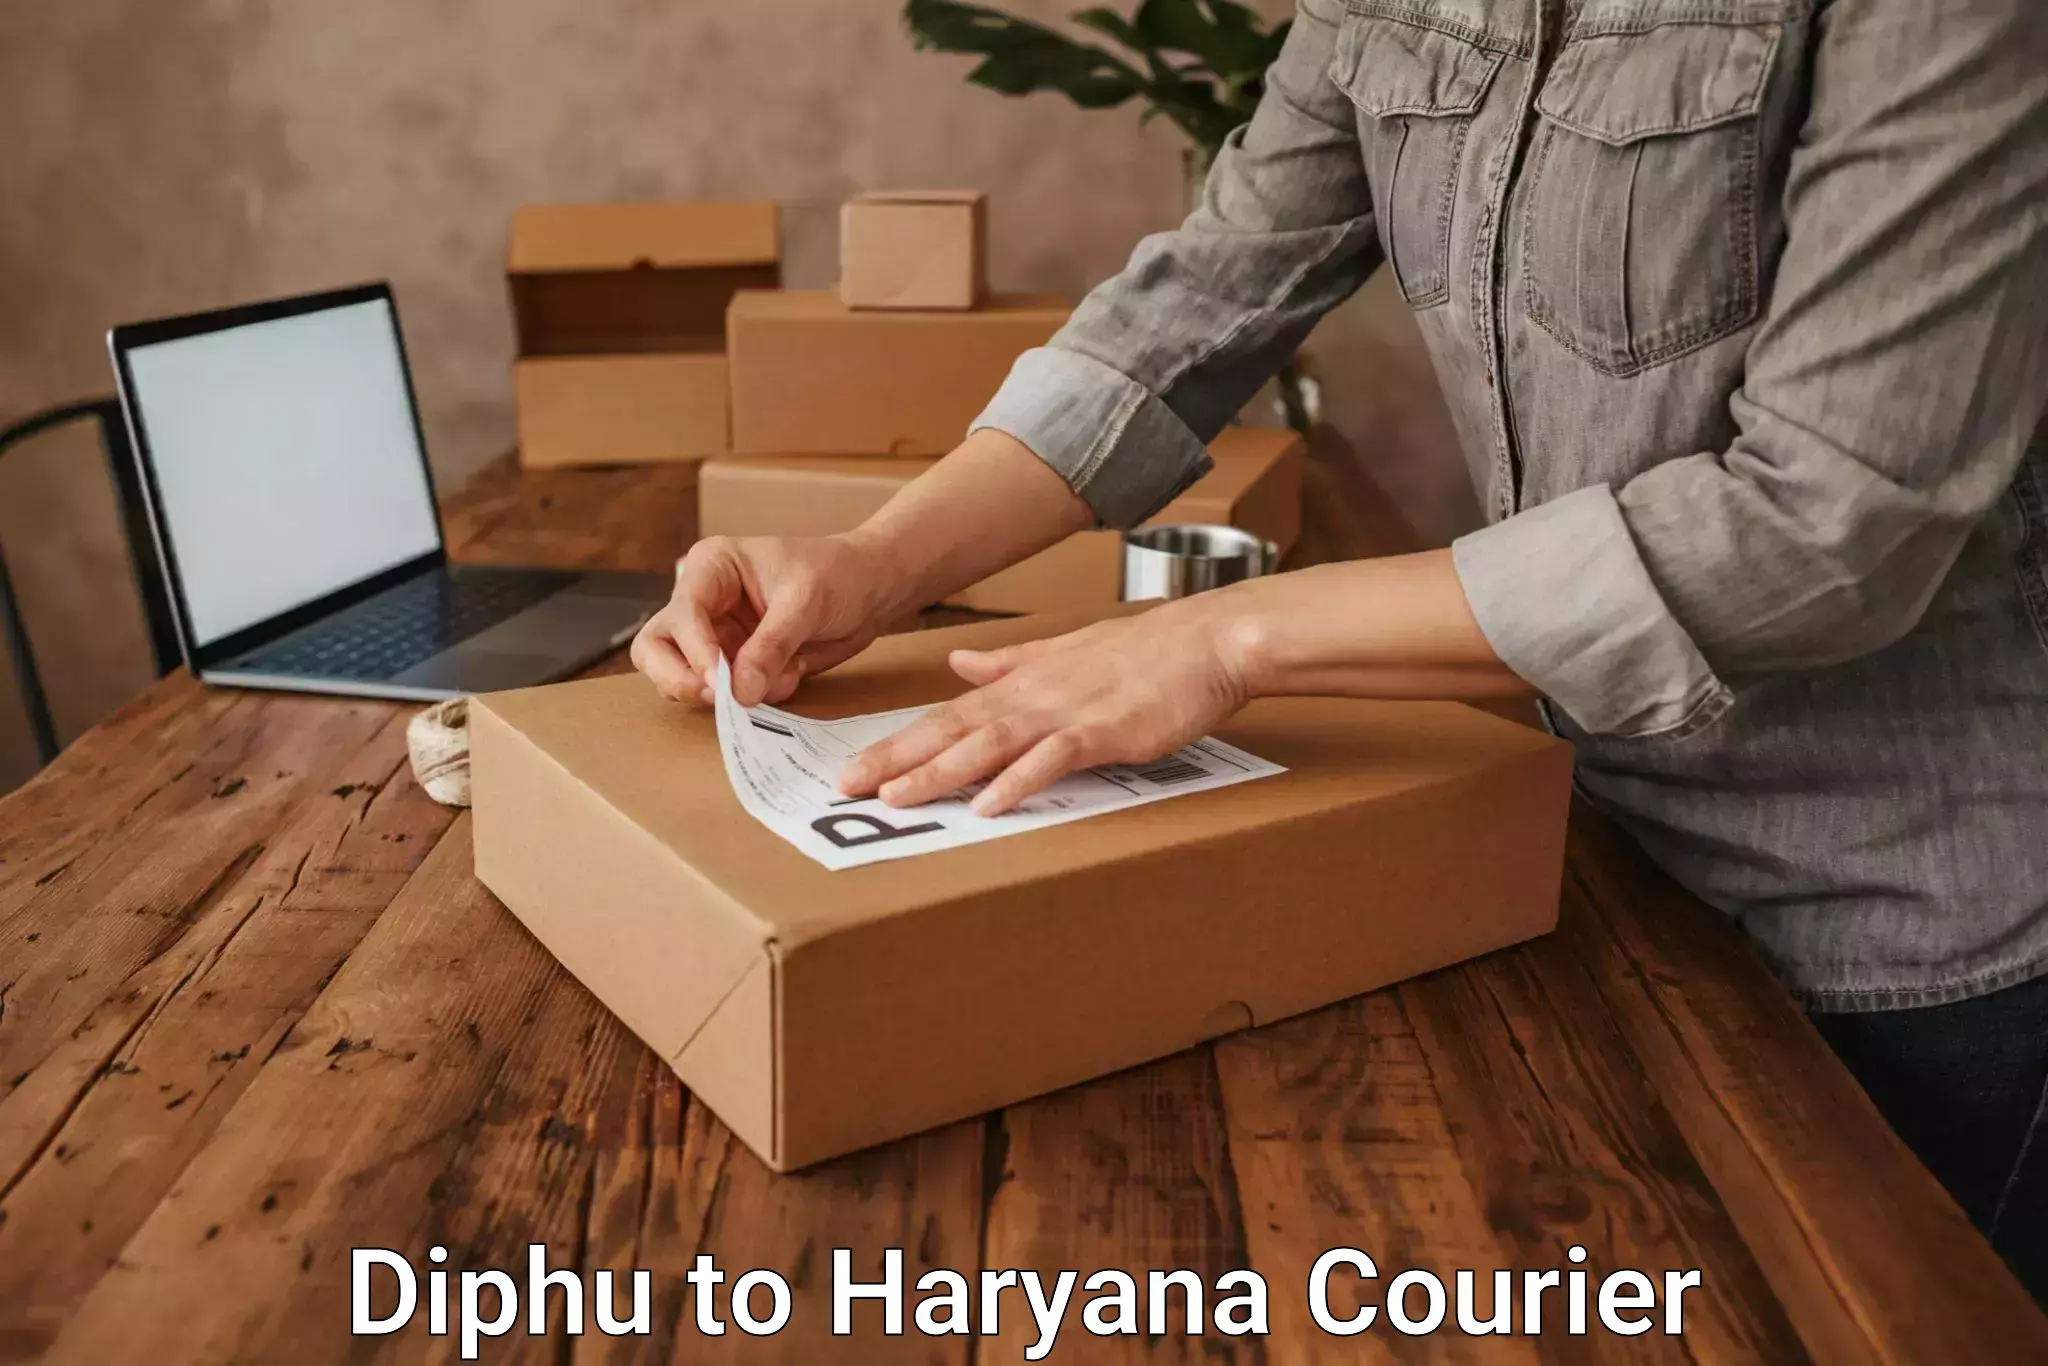 Urgent courier needs Diphu to Panchkula